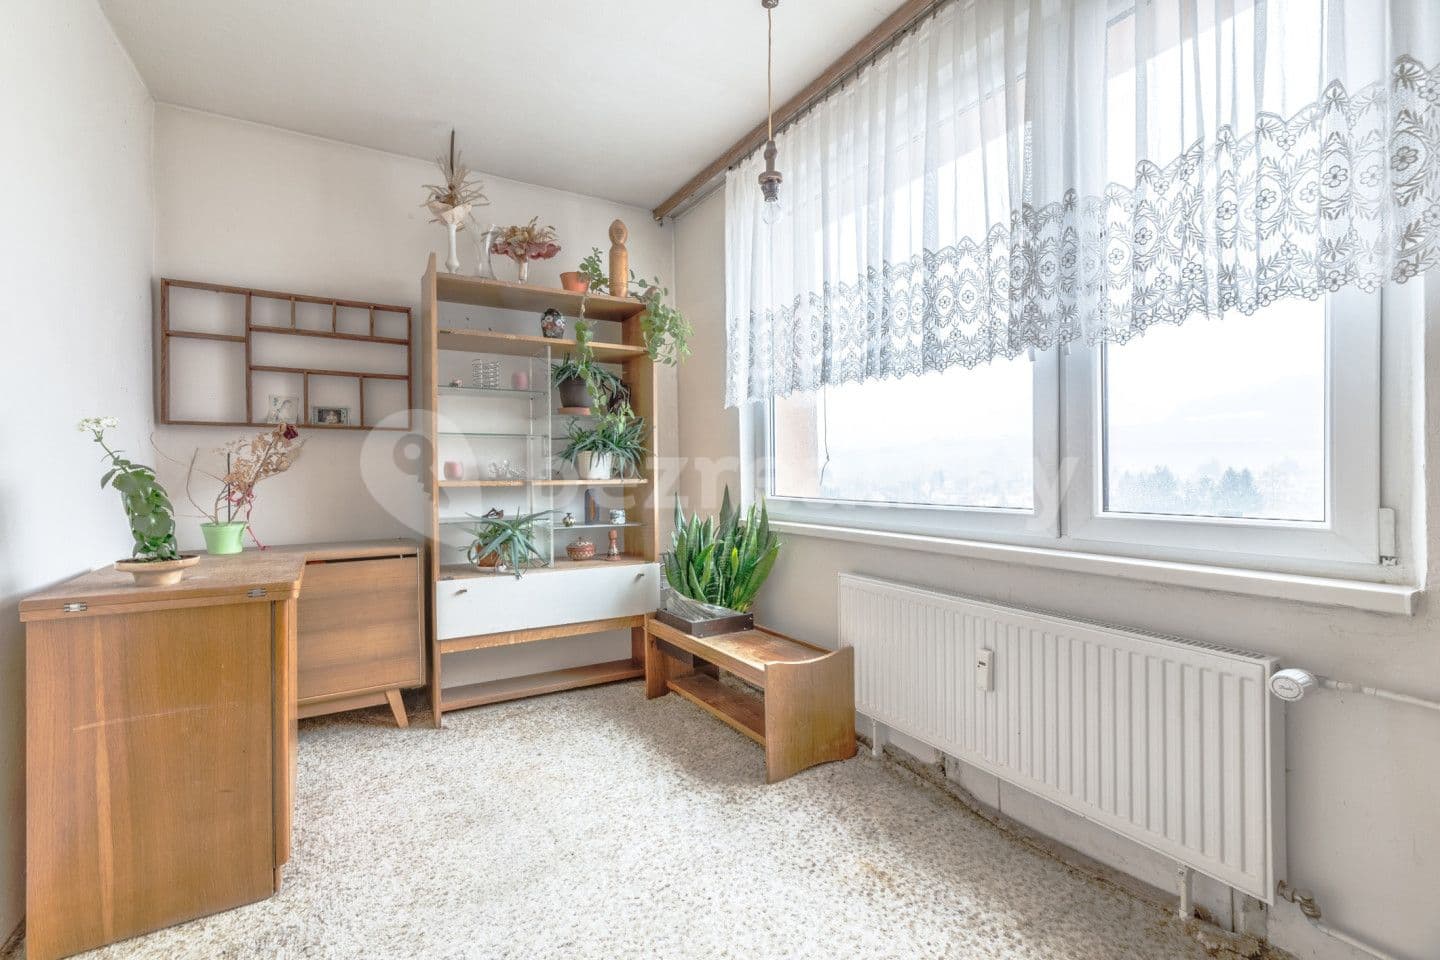 4 bedroom flat for sale, 81 m², Dělnická, Lomnice nad Popelkou, Liberecký Region